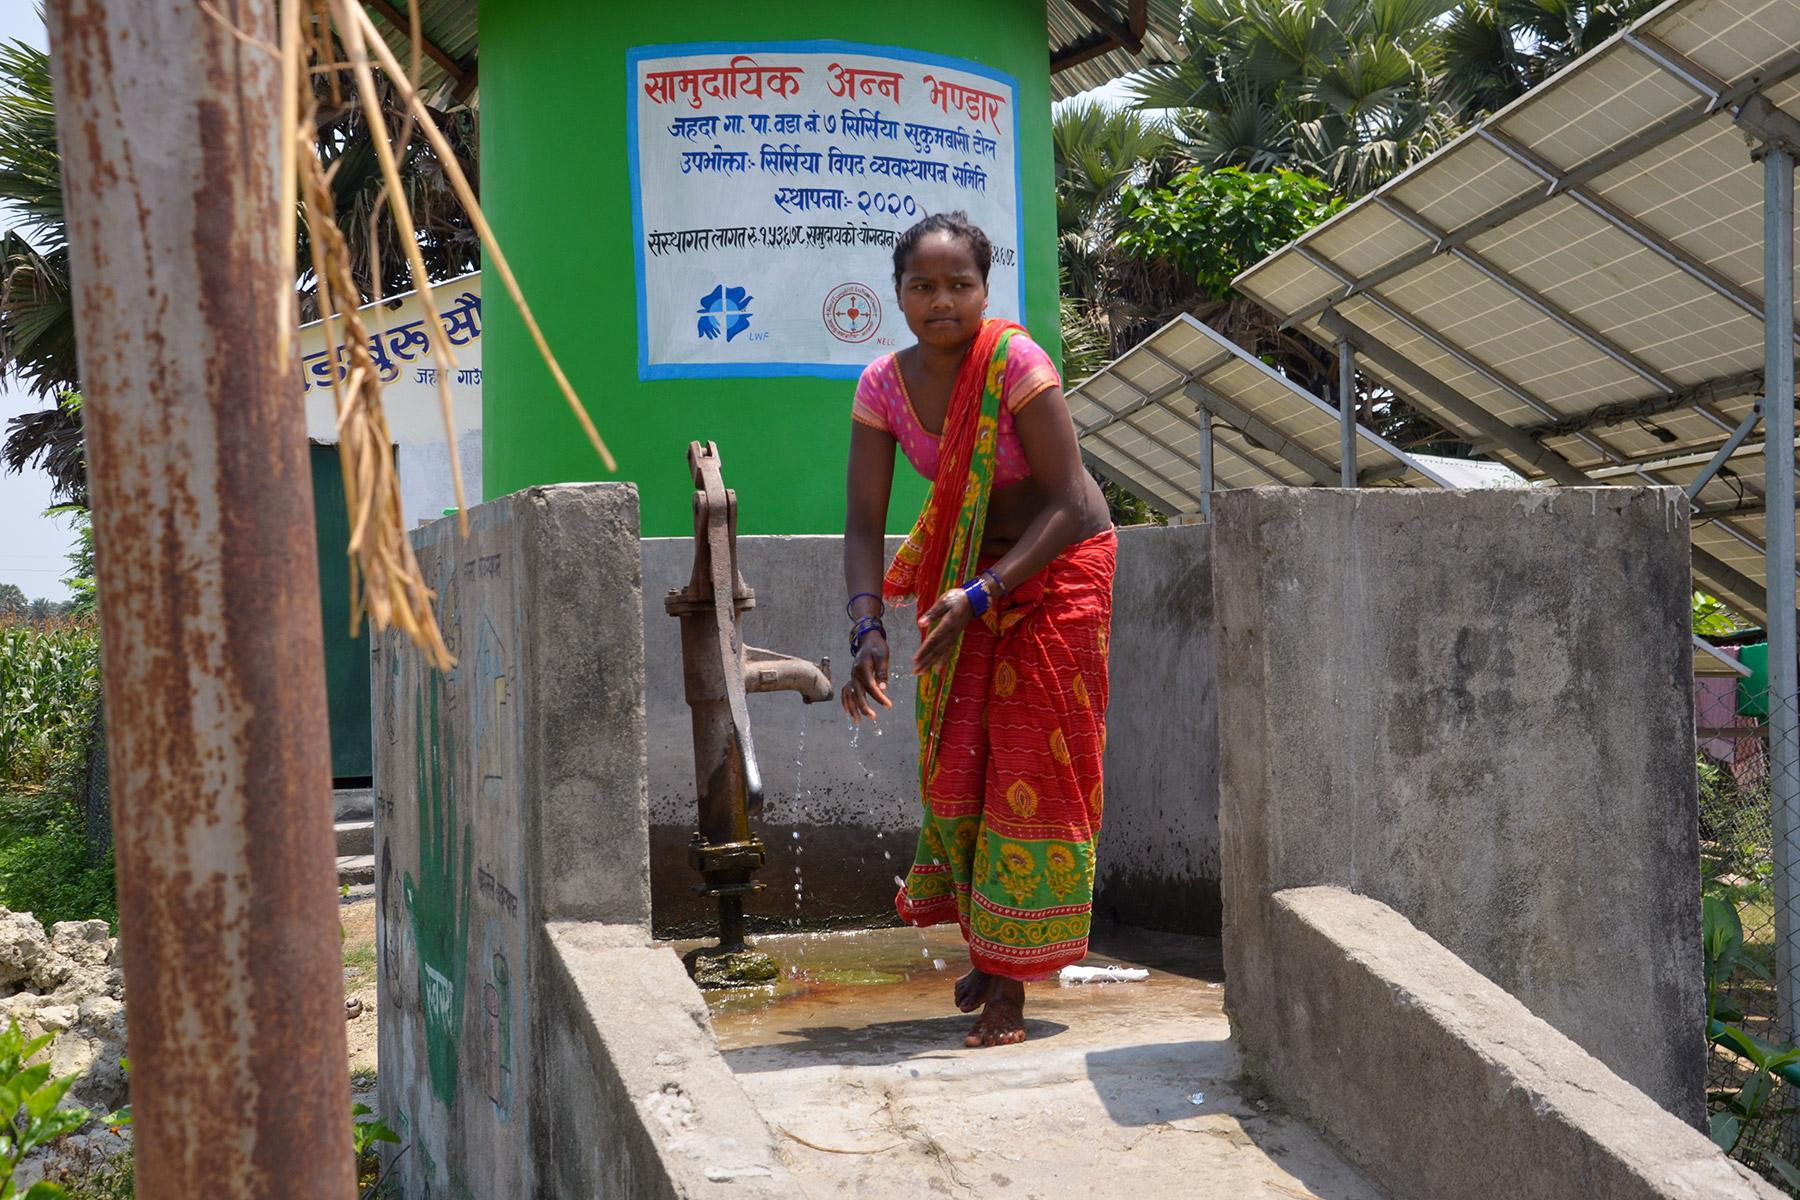 Die Bereitstellung sicherer Wasserquellen für marginalisierte Gemeinschaften ist Teil der gemeinsamen Zusammenarbeit zwischen dem LWB Nepal und der Nepalesischen Evangelisch-Lutherischen Kirche im östlichen Teil des Landes. Foto: LWB Nepal